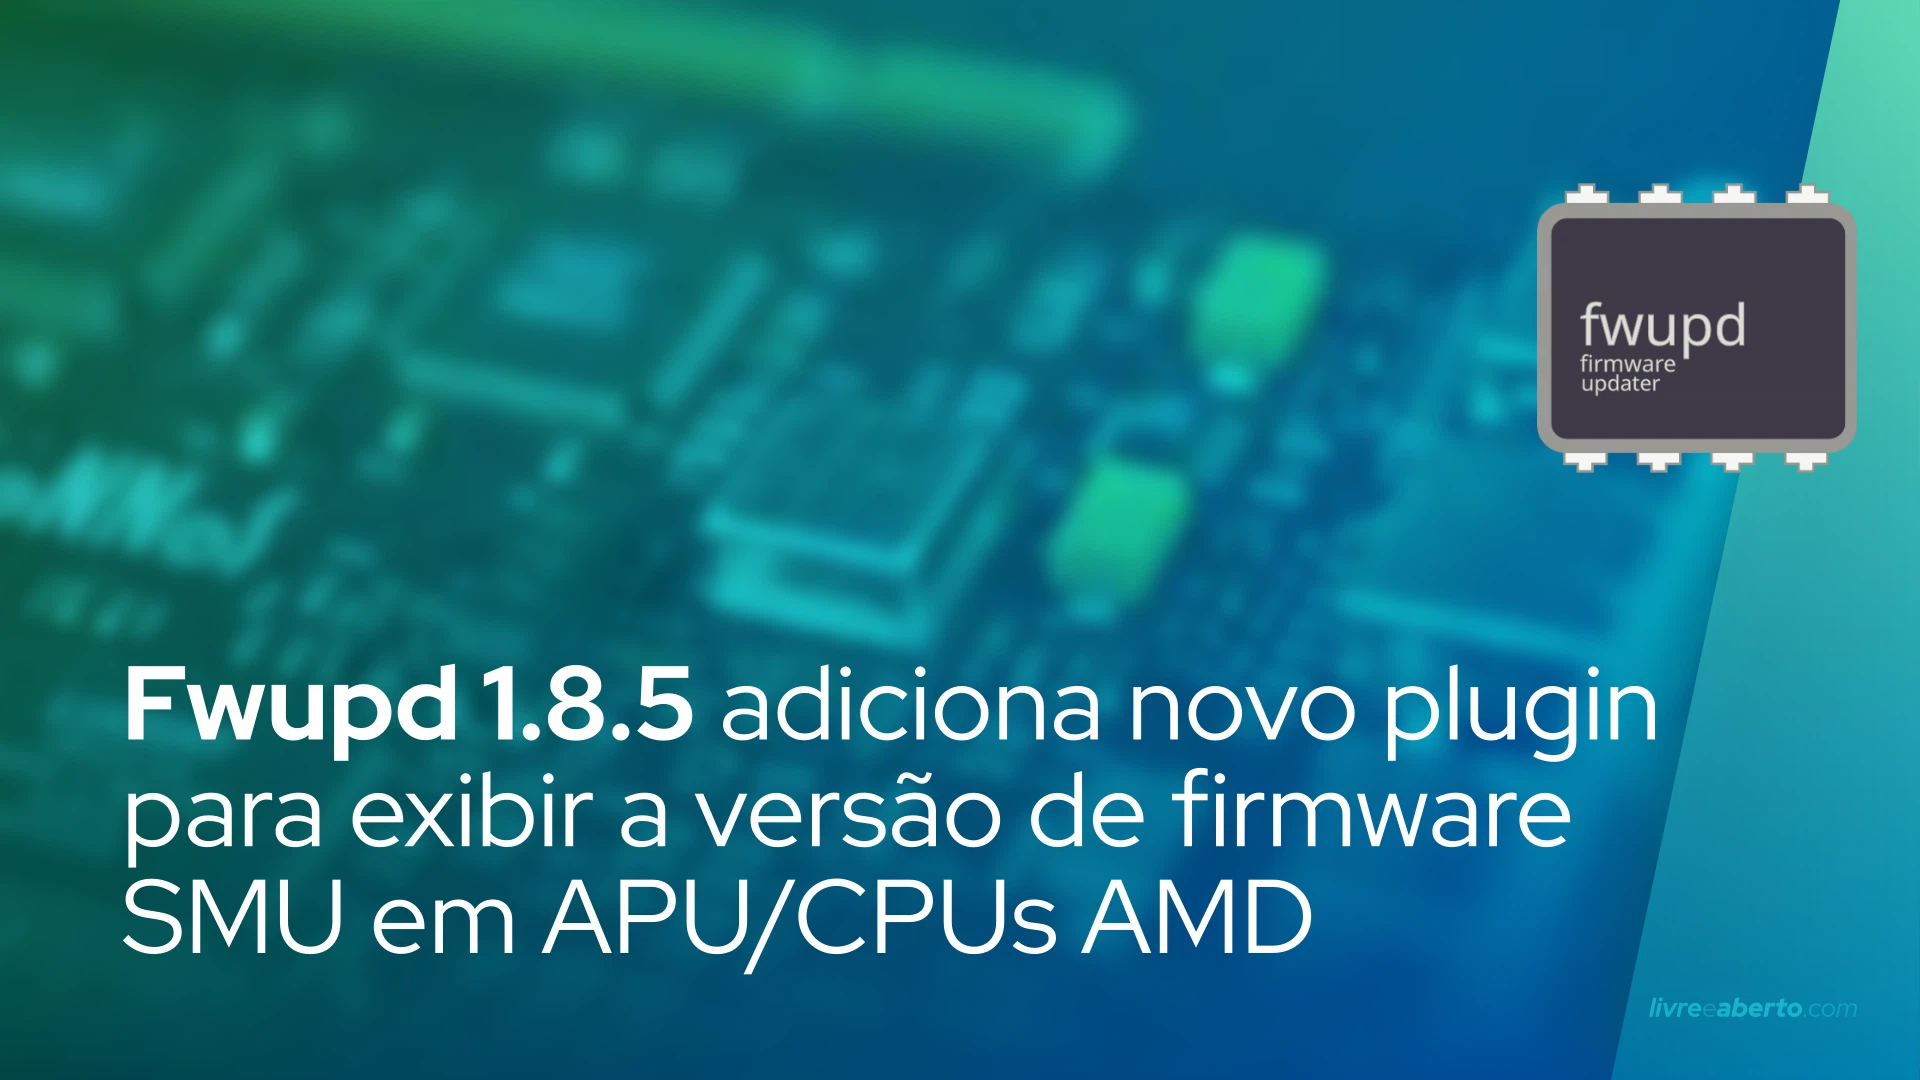 Fwupd 1.8.5 adiciona novo plugin para exibir a versão de firmware SMU em APU/CPUs AMD